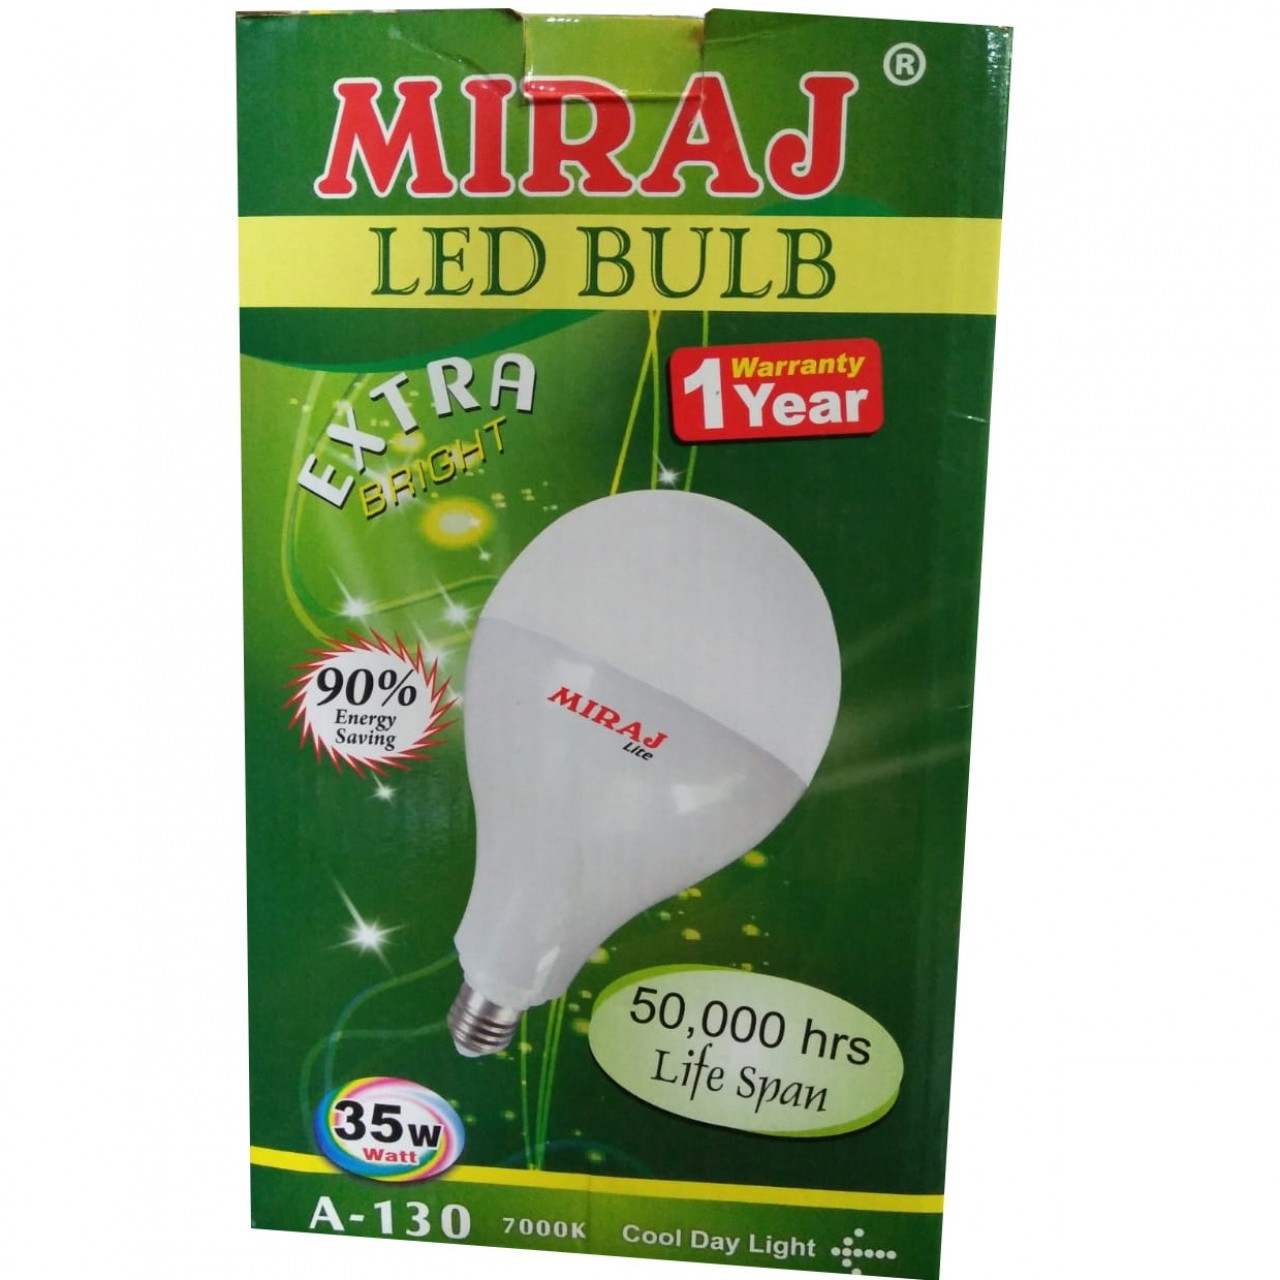 Miraj A-130 Extra Bright LED Bulb - 35W - 1 Year Warranty